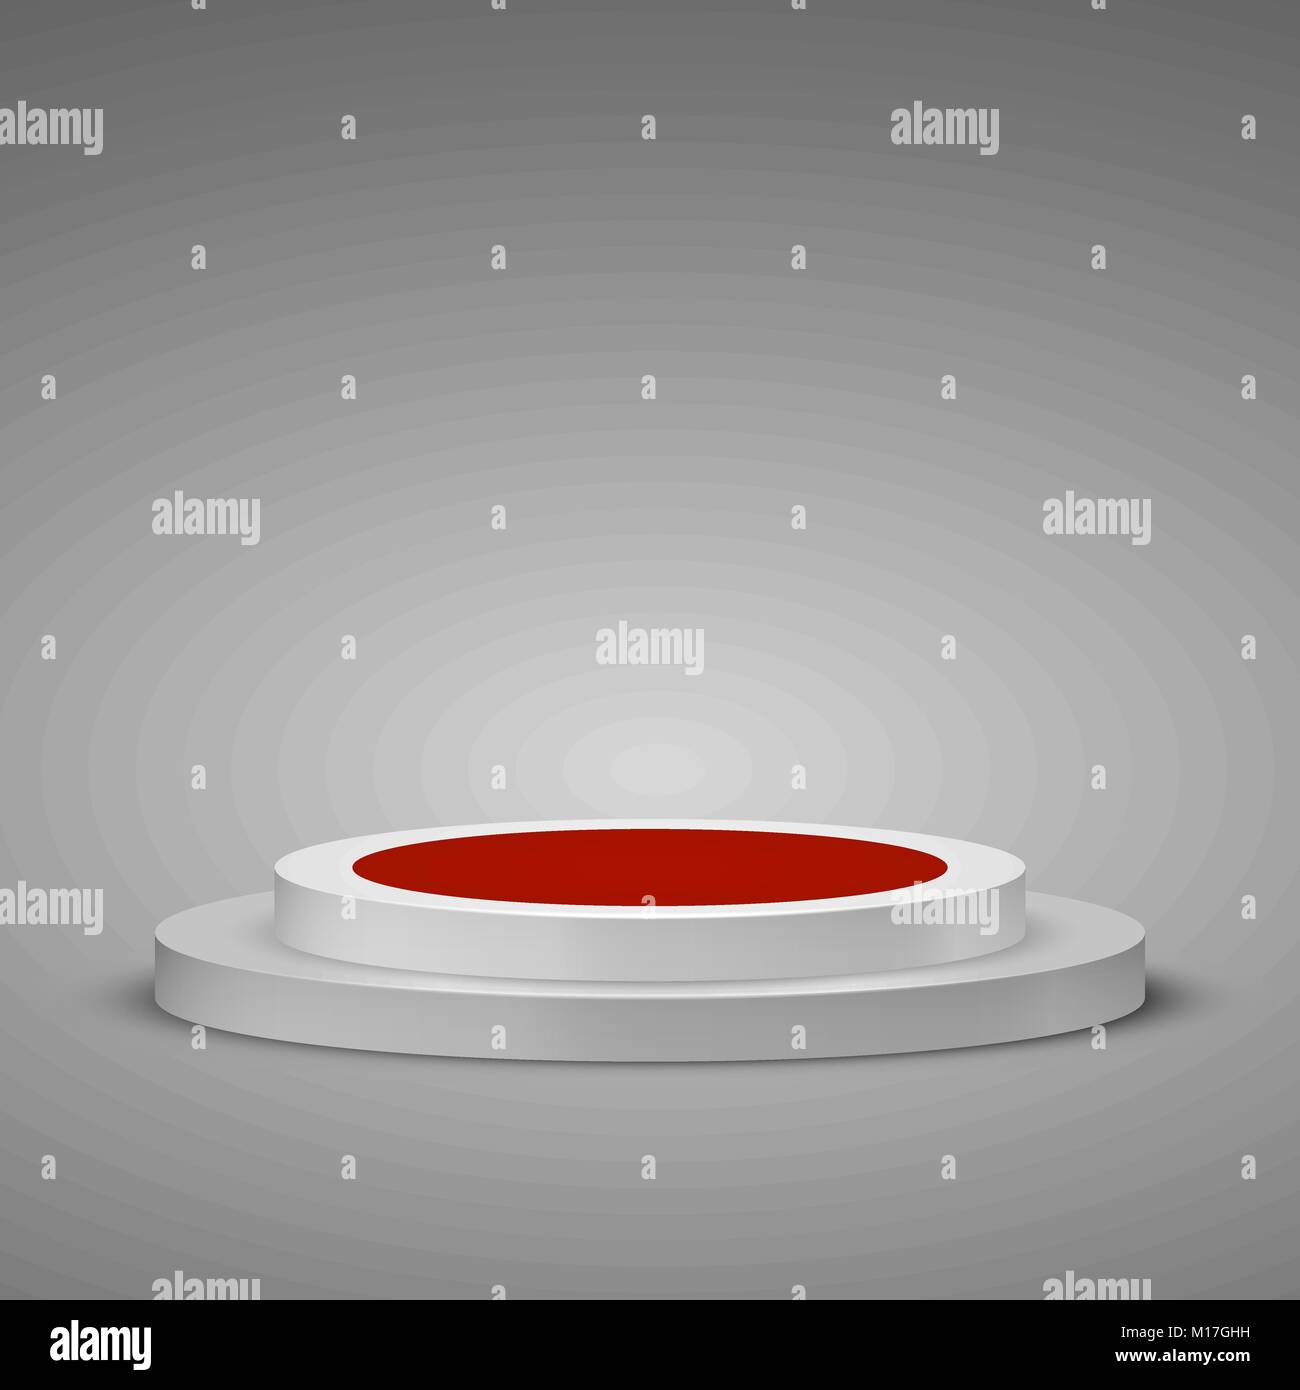 Zylindrische Podium mit roten Teppich. Bühne Podium Szene mit einem Schritt. Vector Illustration Stock Vektor